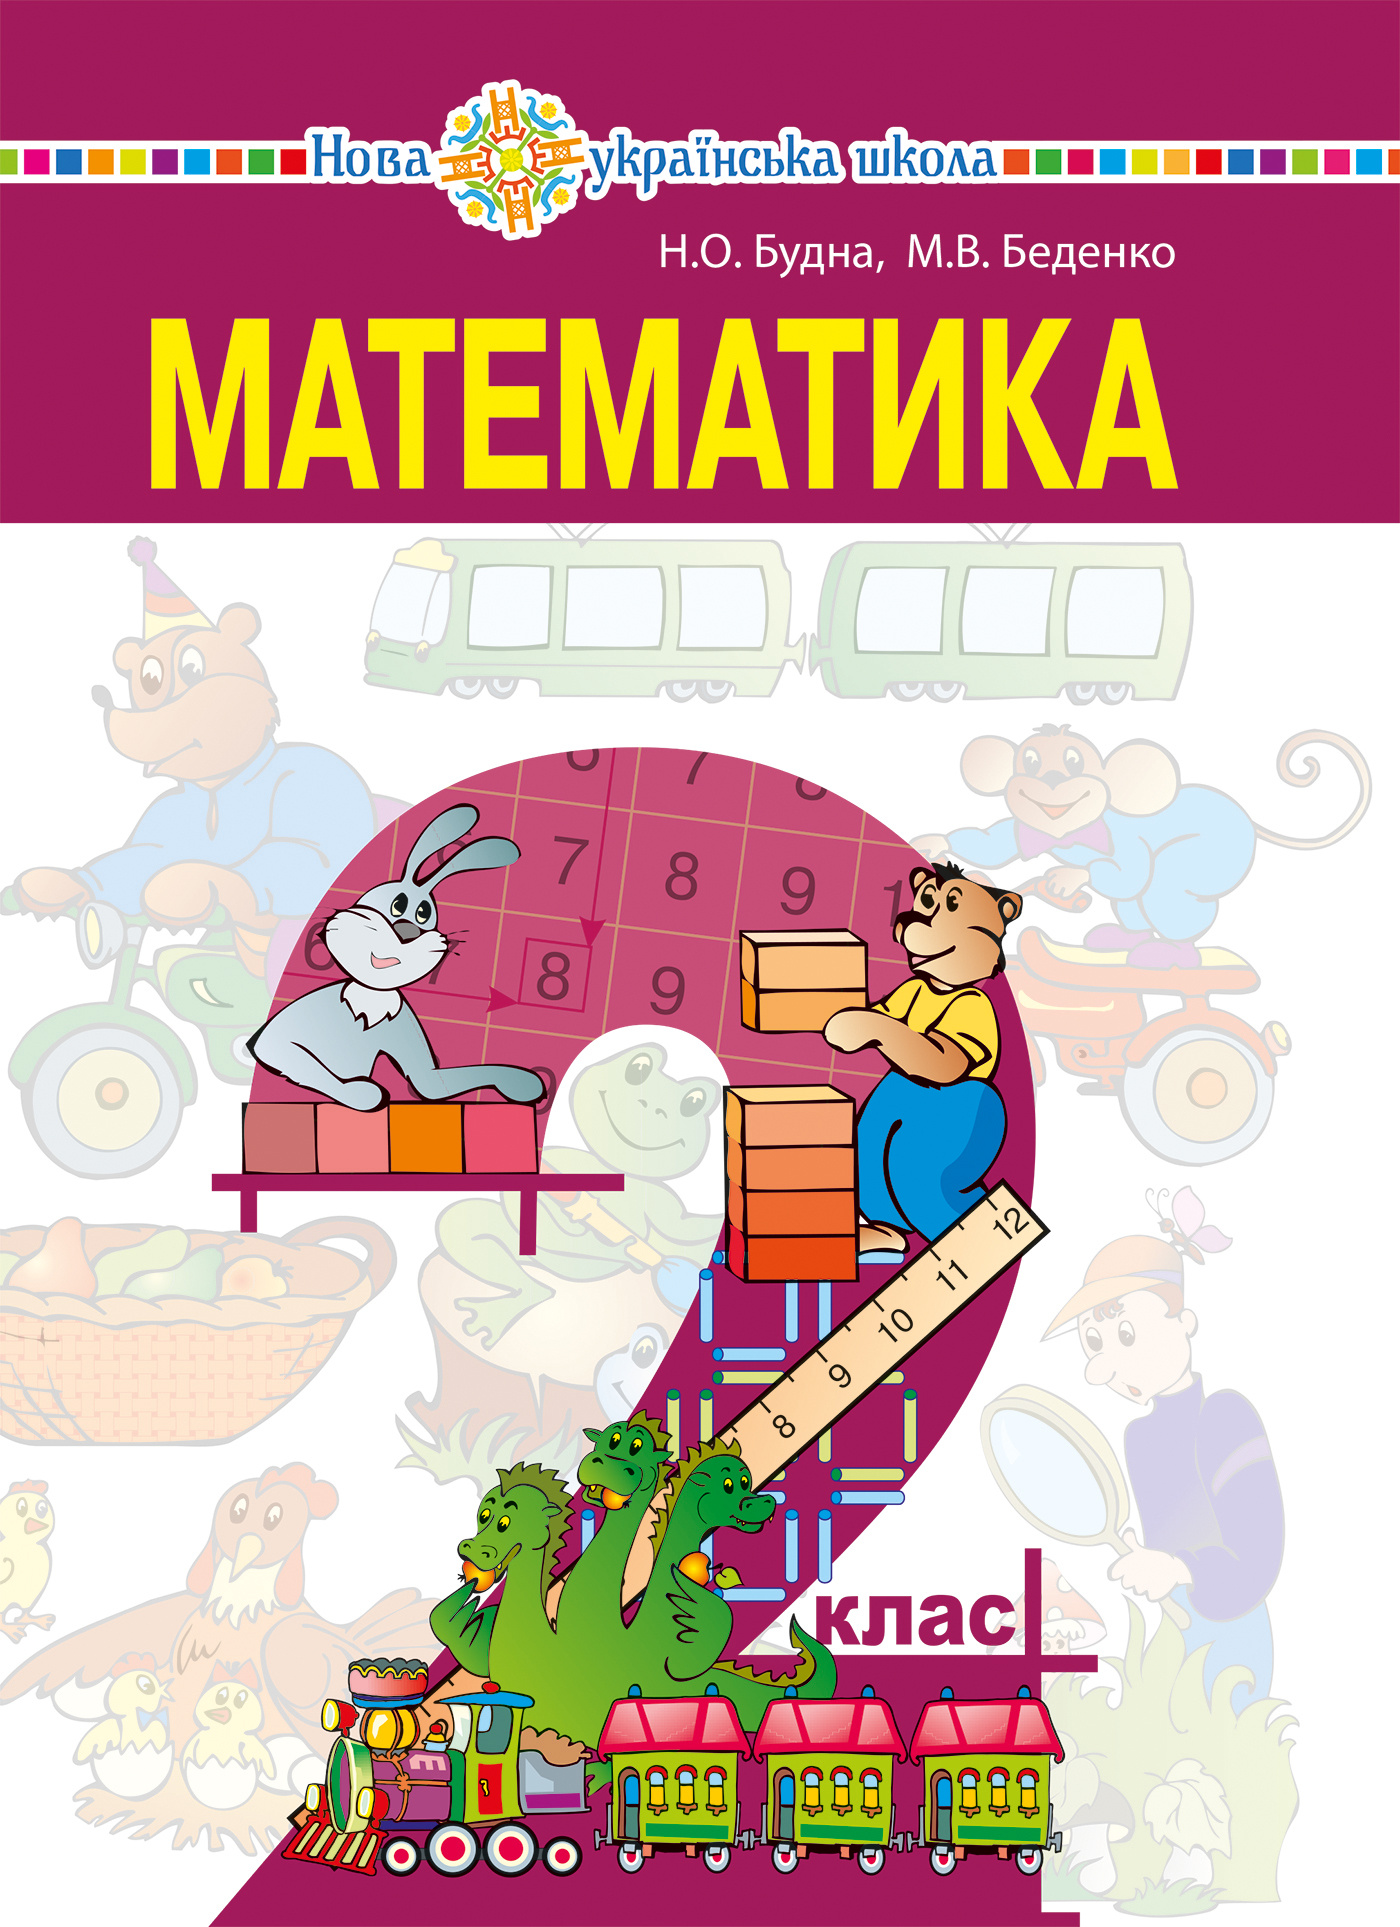 "Математика" підручник для 2 класу закладів загальної середньої освіти. Автор — Марко Беденко, Наталя Будна. 